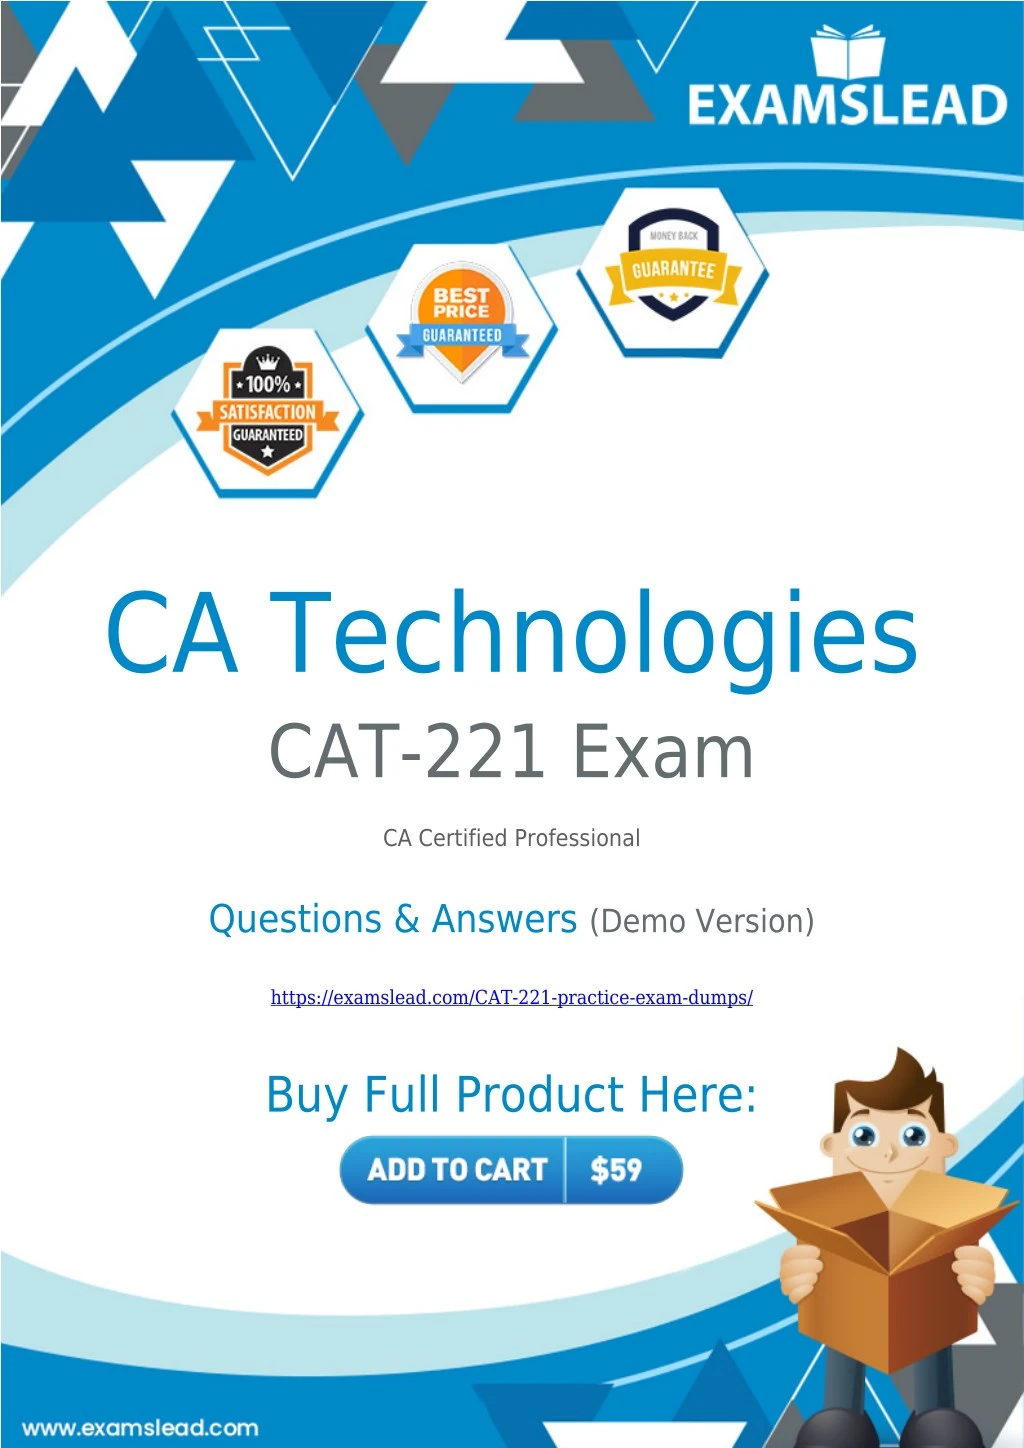 ca technologies cat 221 exam